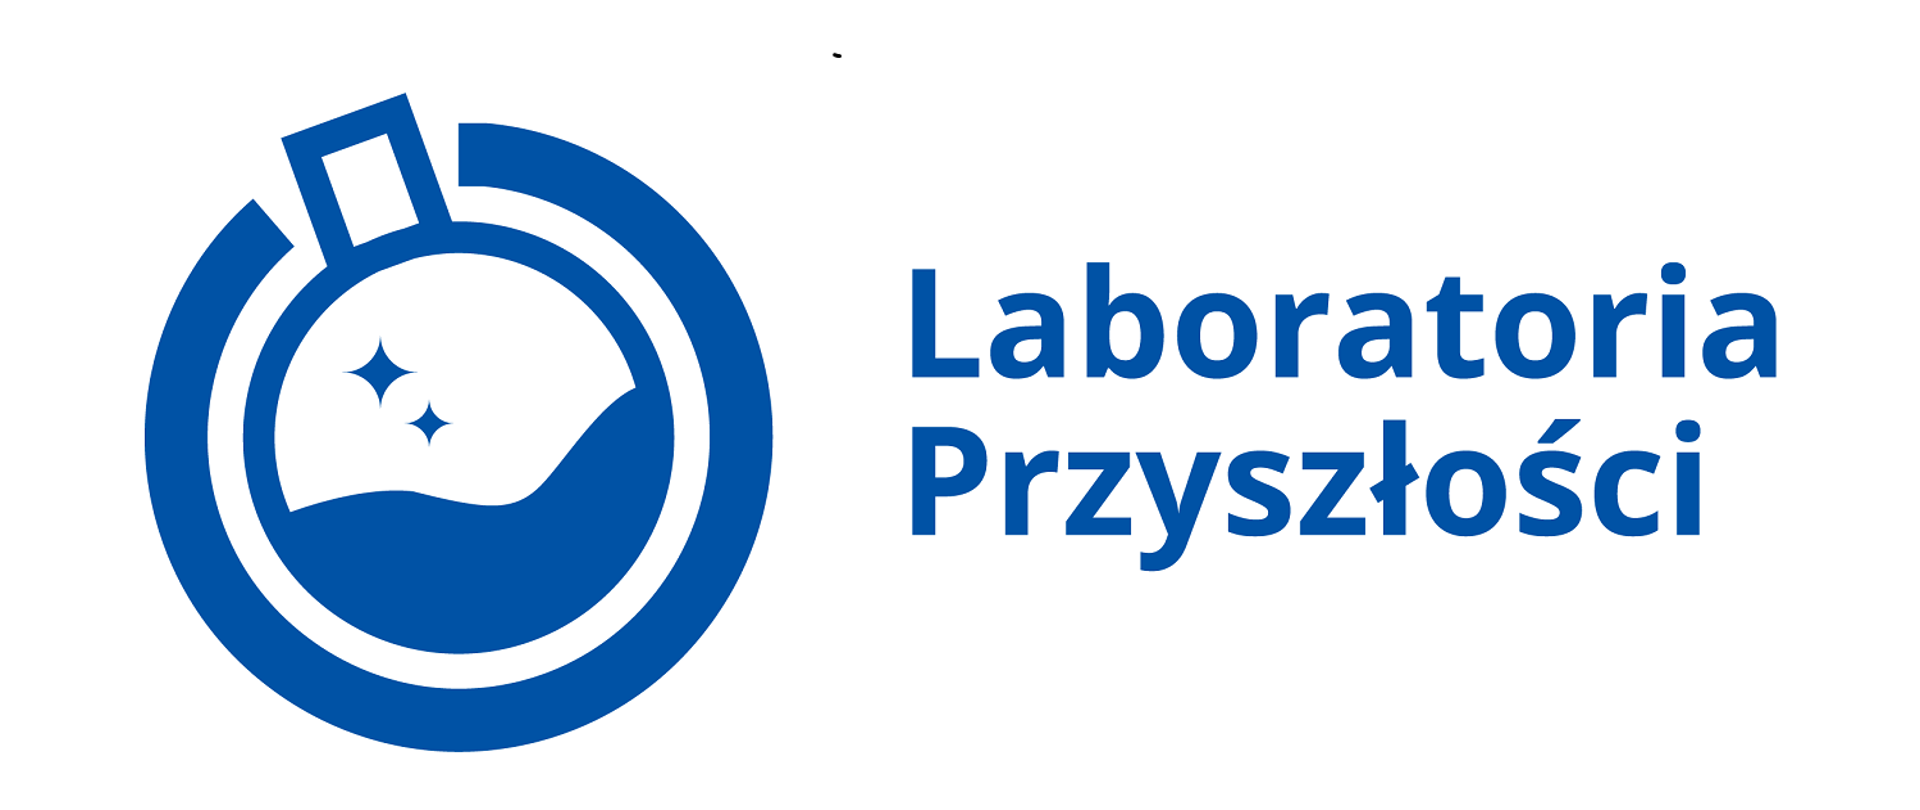 Logo projektu Laboratorium przyszłości